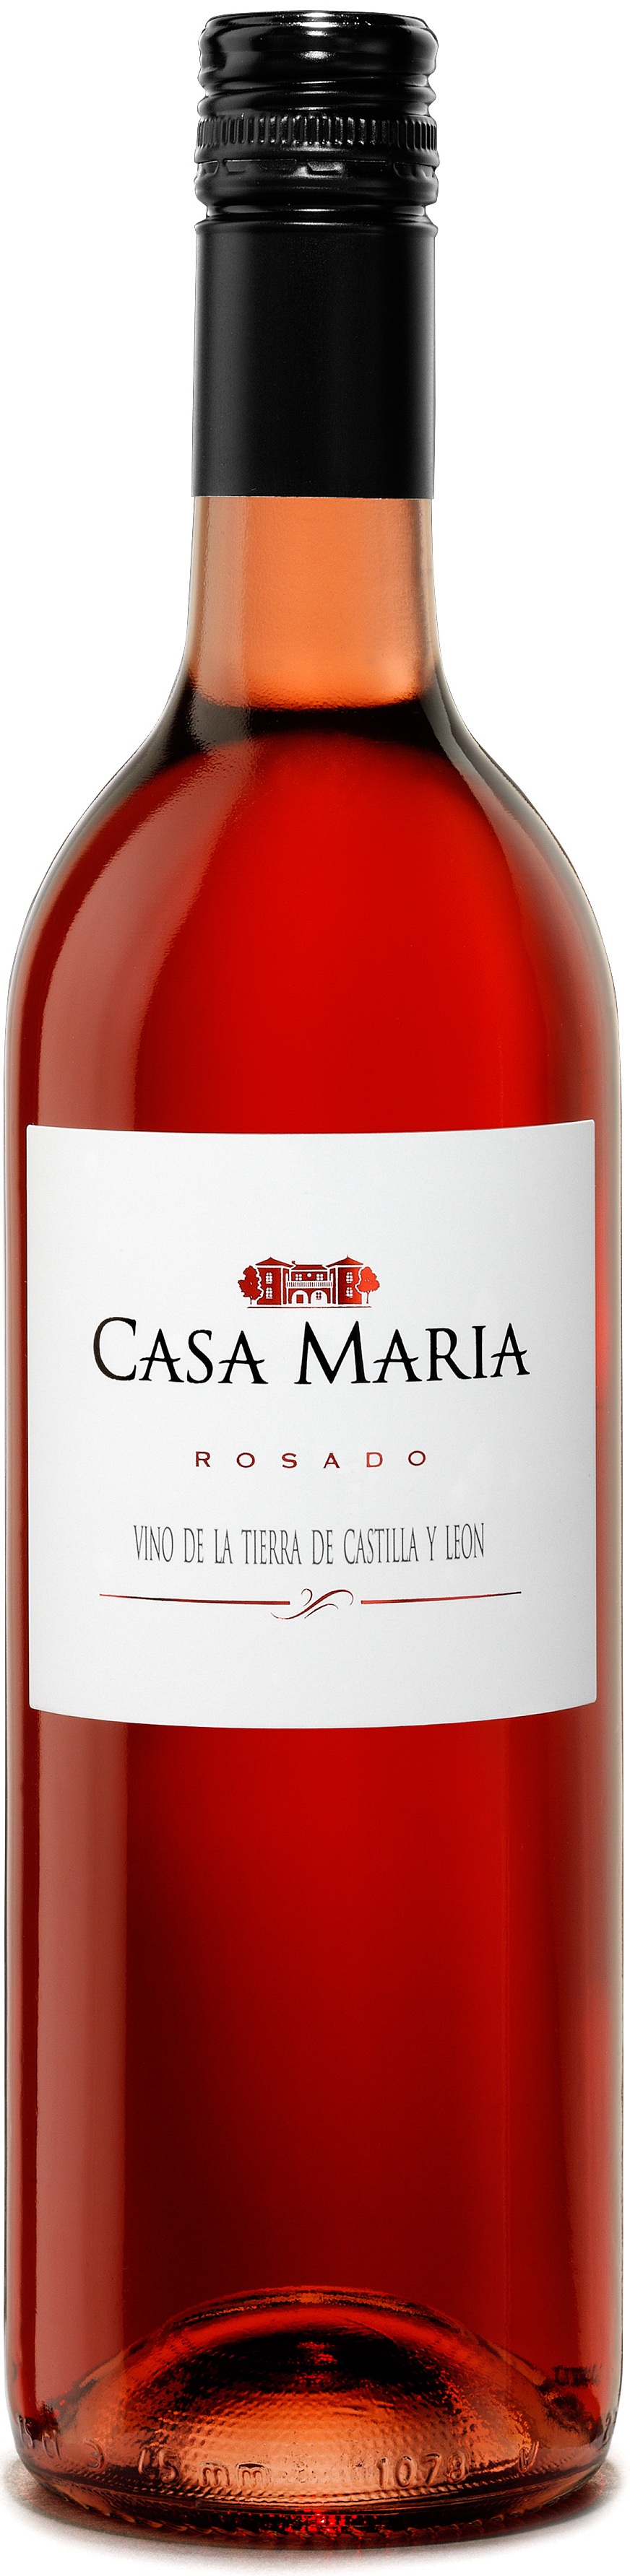 Image of Wine bottle Casa María Rosado